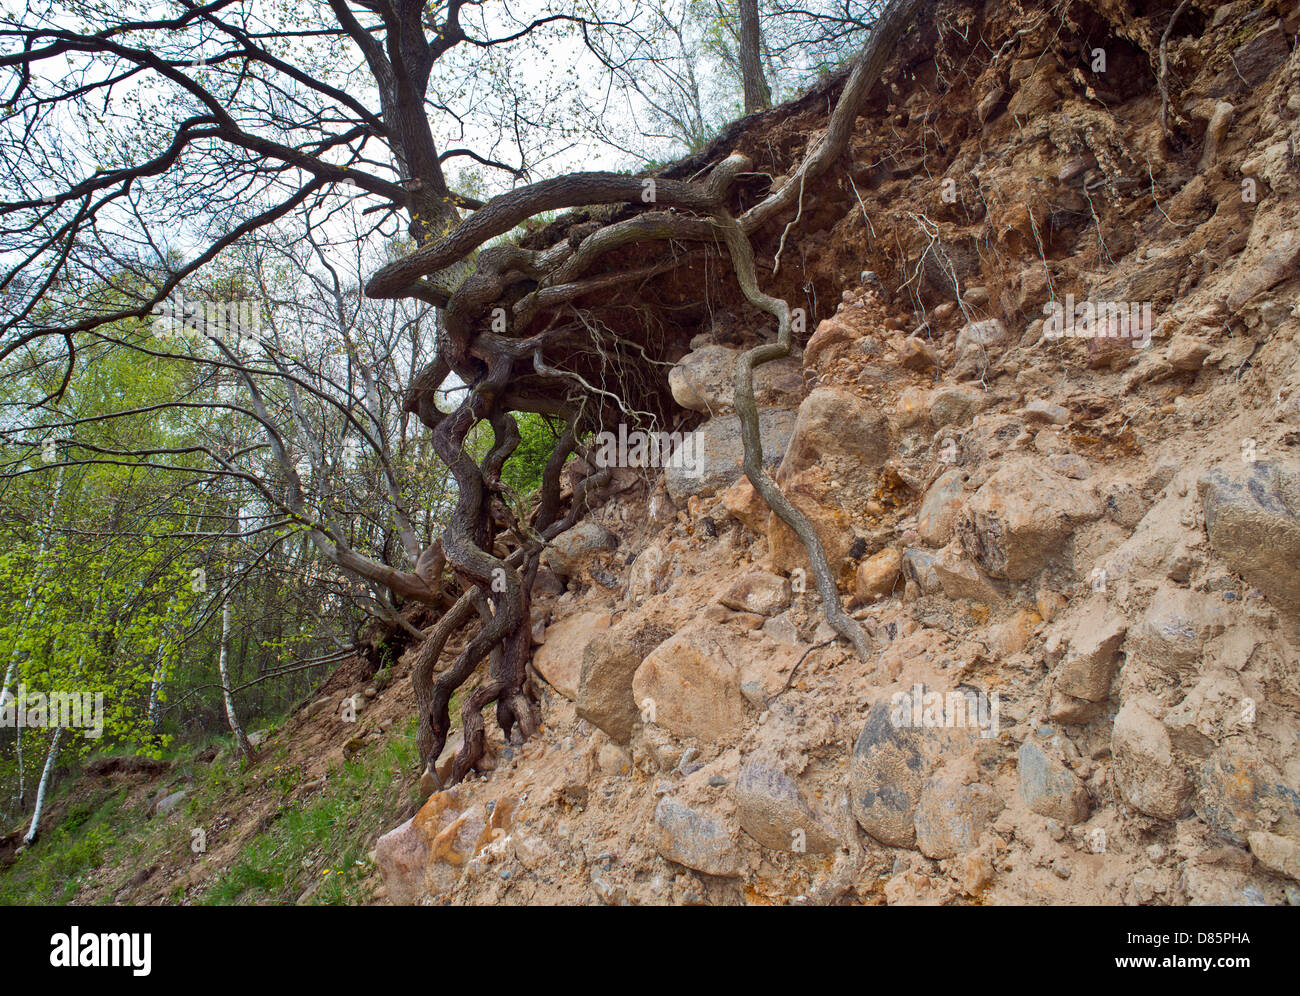 Foundlings aumento da un albero vicino sparrow's harborage in geoparco in Ziethen lordo, Germania, 02 maggio 2013. Foto: Patrick Pleul Foto Stock